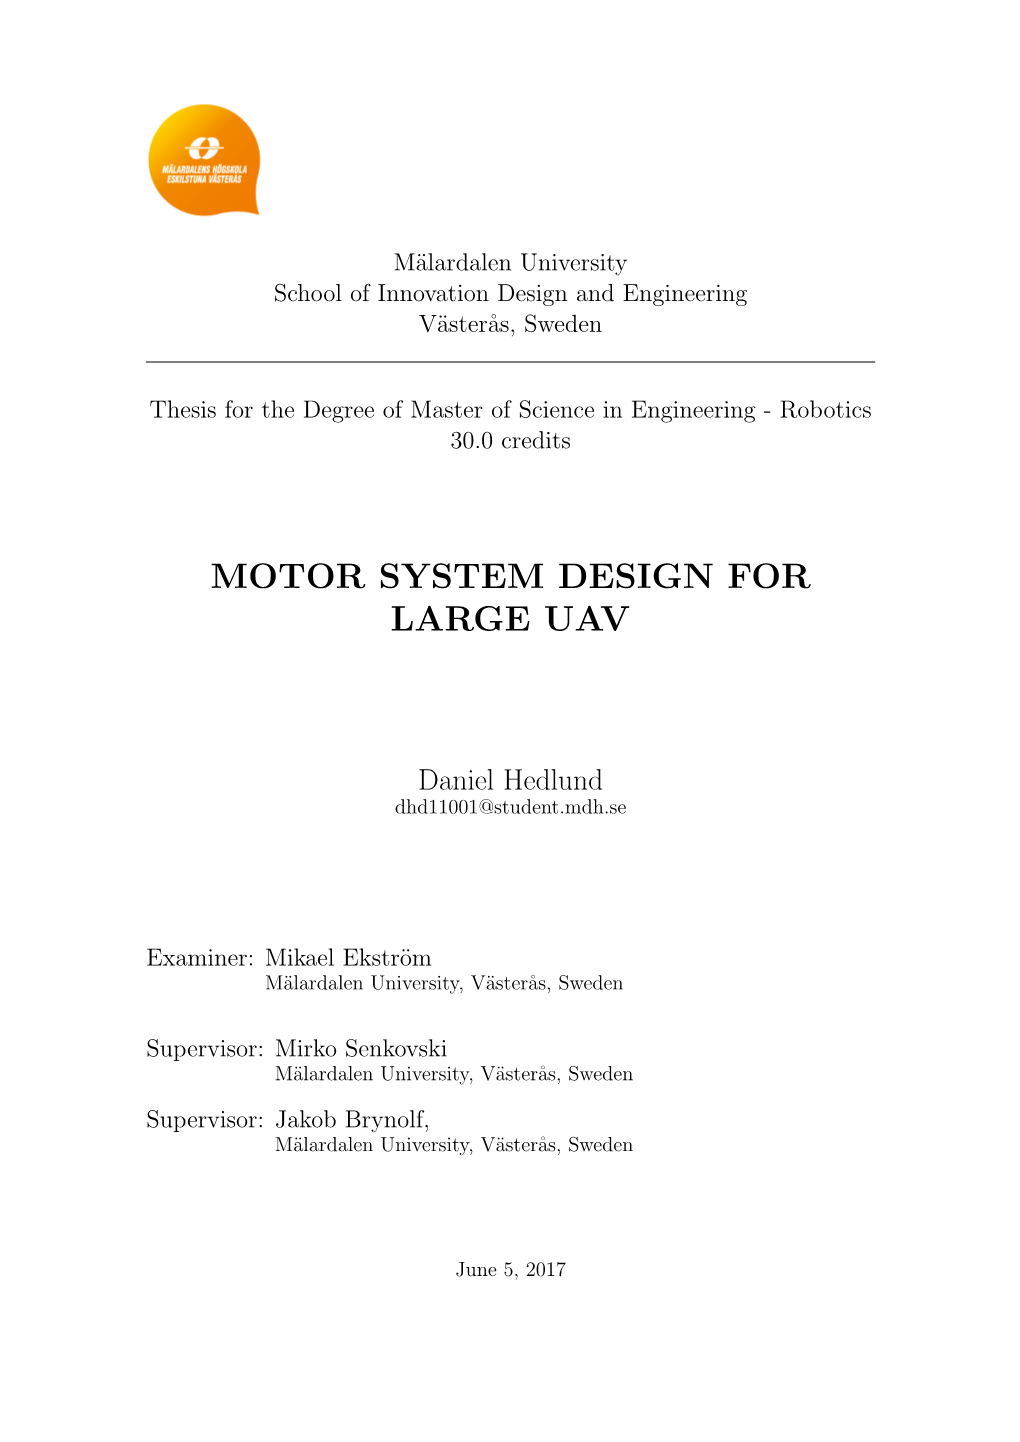 Motor System Design for Large Uav